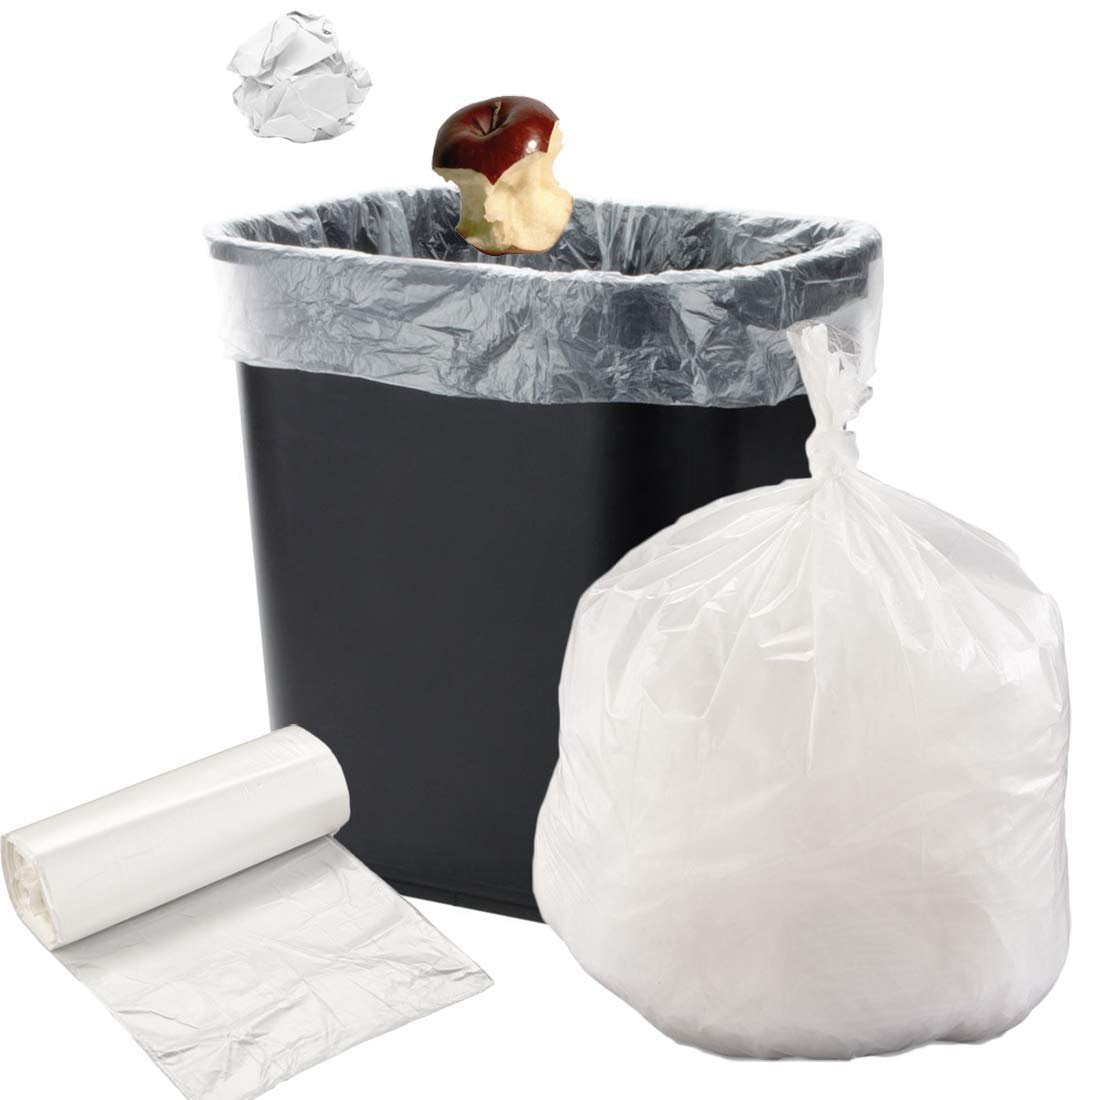 55-60 Gallon Clear Trash Bags 38x60 22 Micron 150 Bags-2734